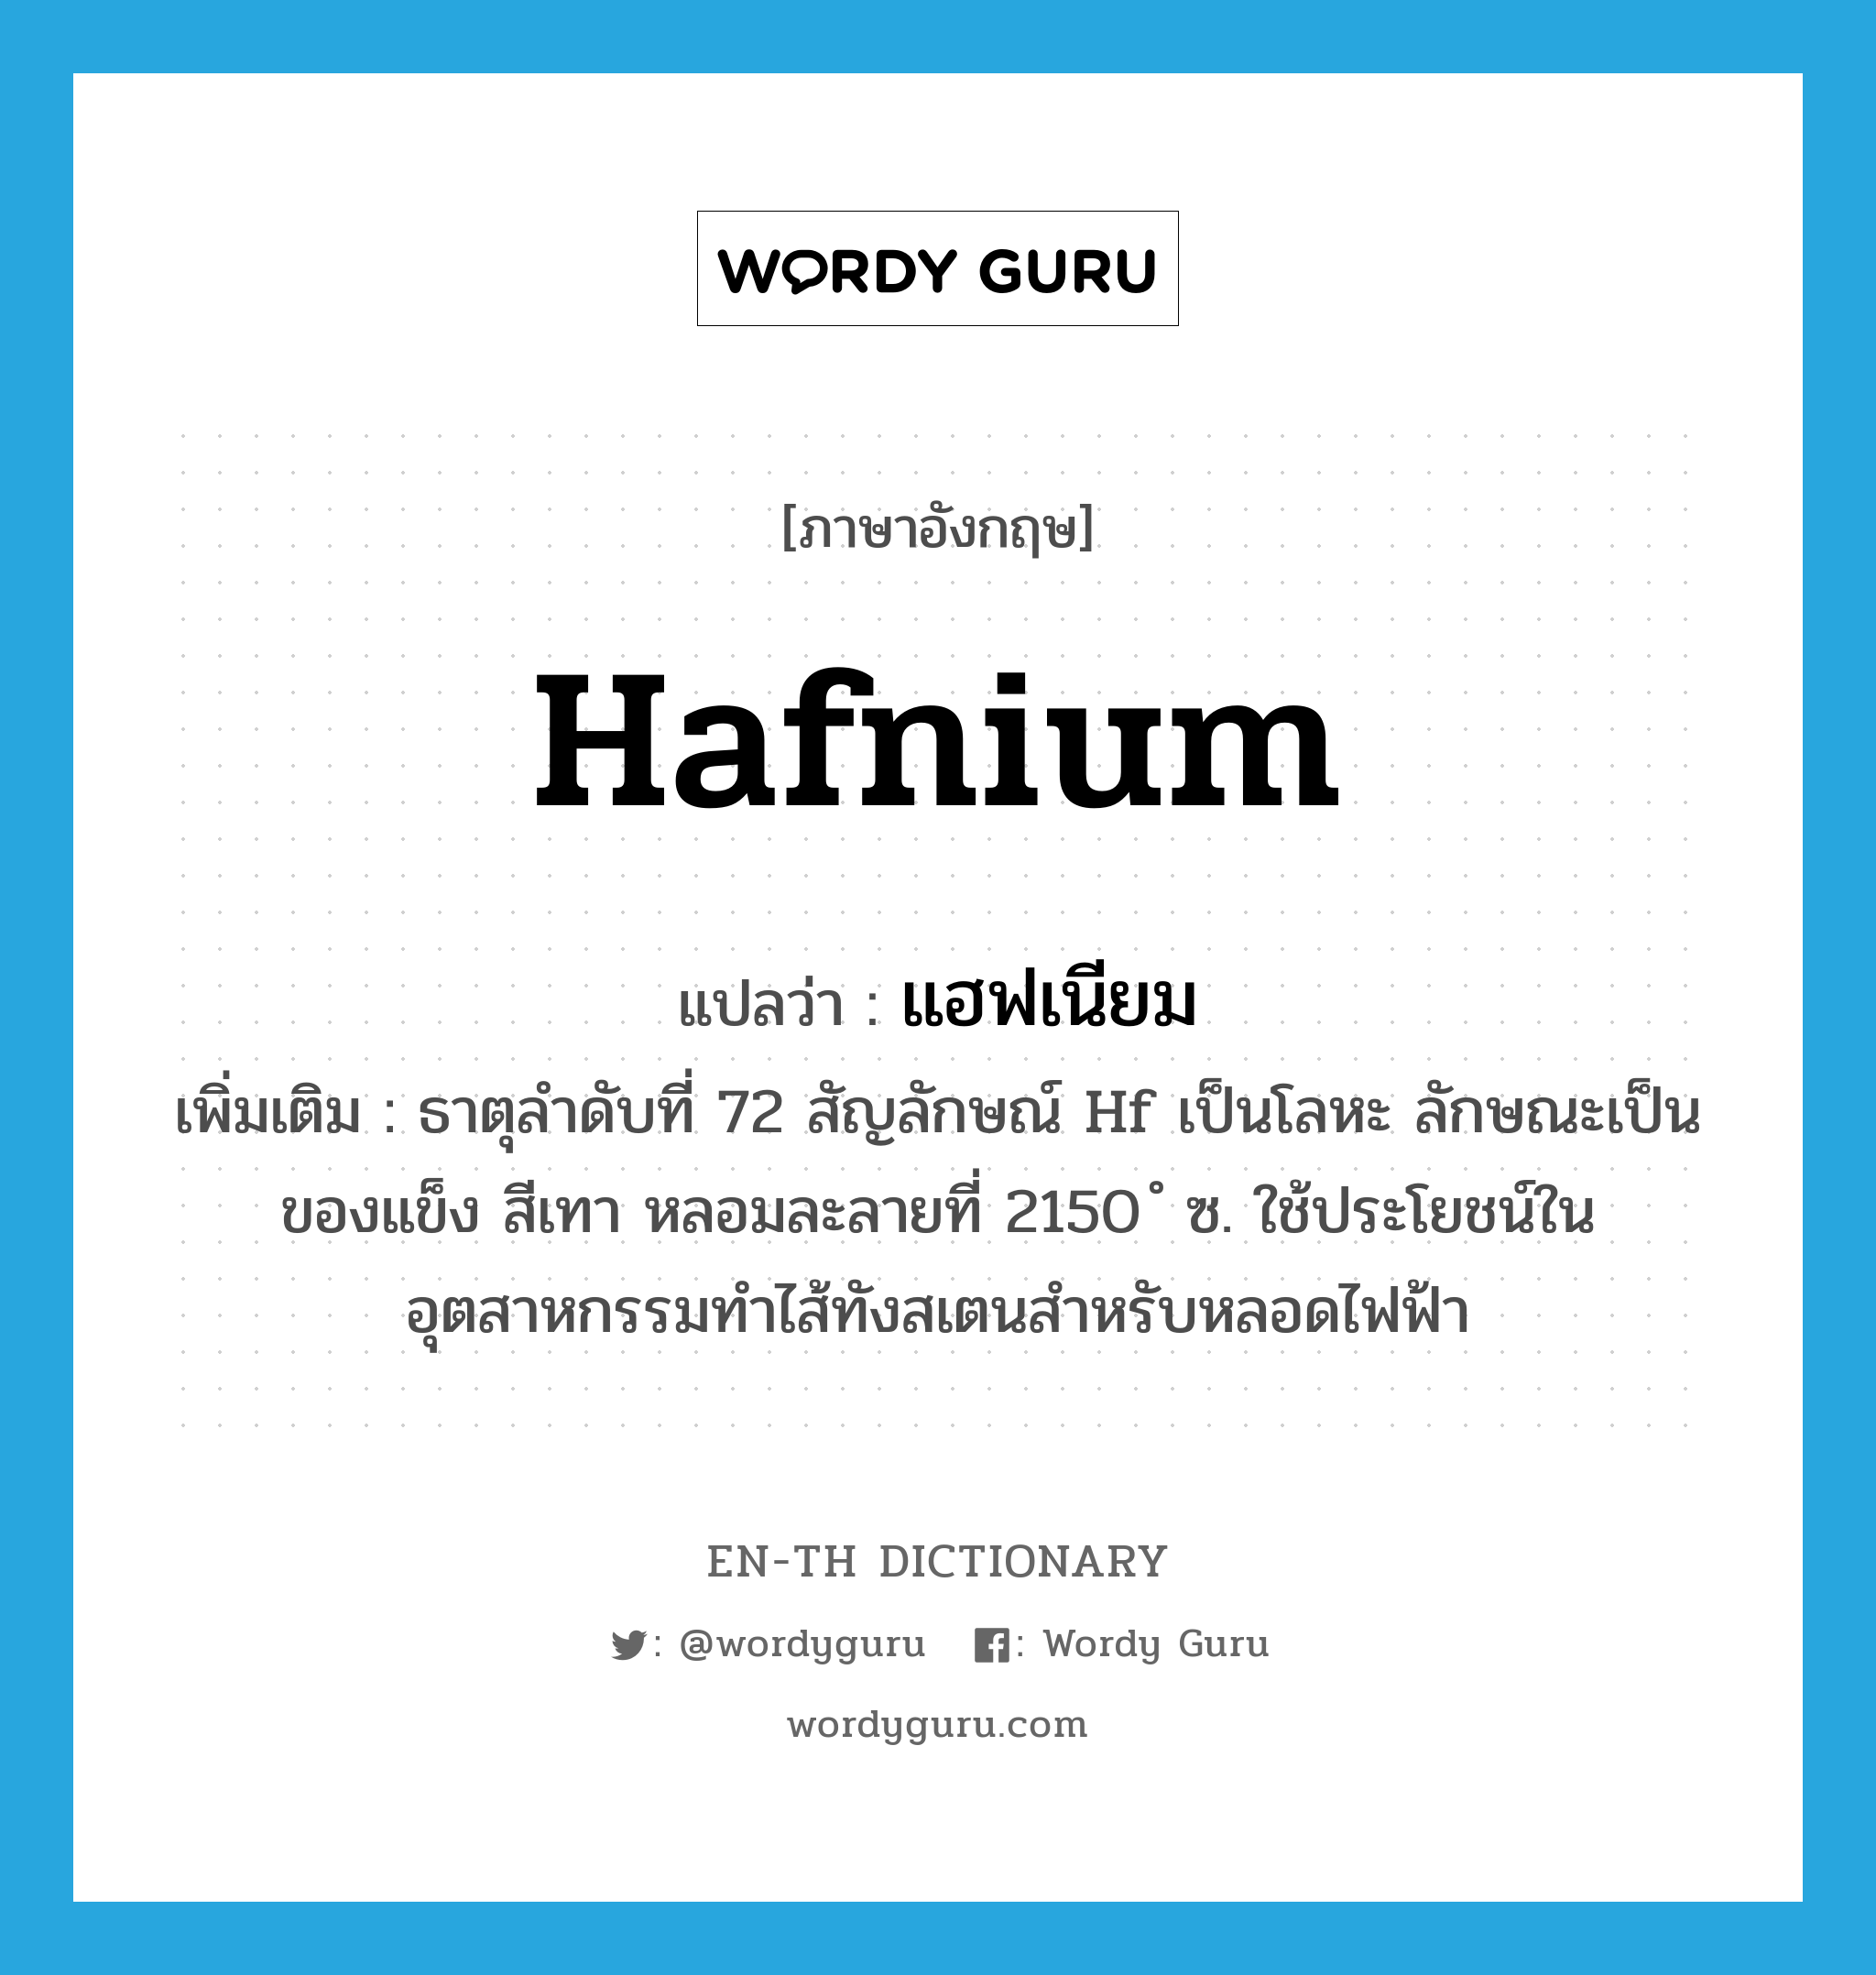 hafnium แปลว่า?, คำศัพท์ภาษาอังกฤษ hafnium แปลว่า แฮฟเนียม ประเภท N เพิ่มเติม ธาตุลำดับที่ 72 สัญลักษณ์ Hf เป็นโลหะ ลักษณะเป็นของแข็ง สีเทา หลอมละลายที่ 2150 ํ ซ. ใช้ประโยชน์ในอุตสาหกรรมทำไส้ทังสเตนสำหรับหลอดไฟฟ้า หมวด N